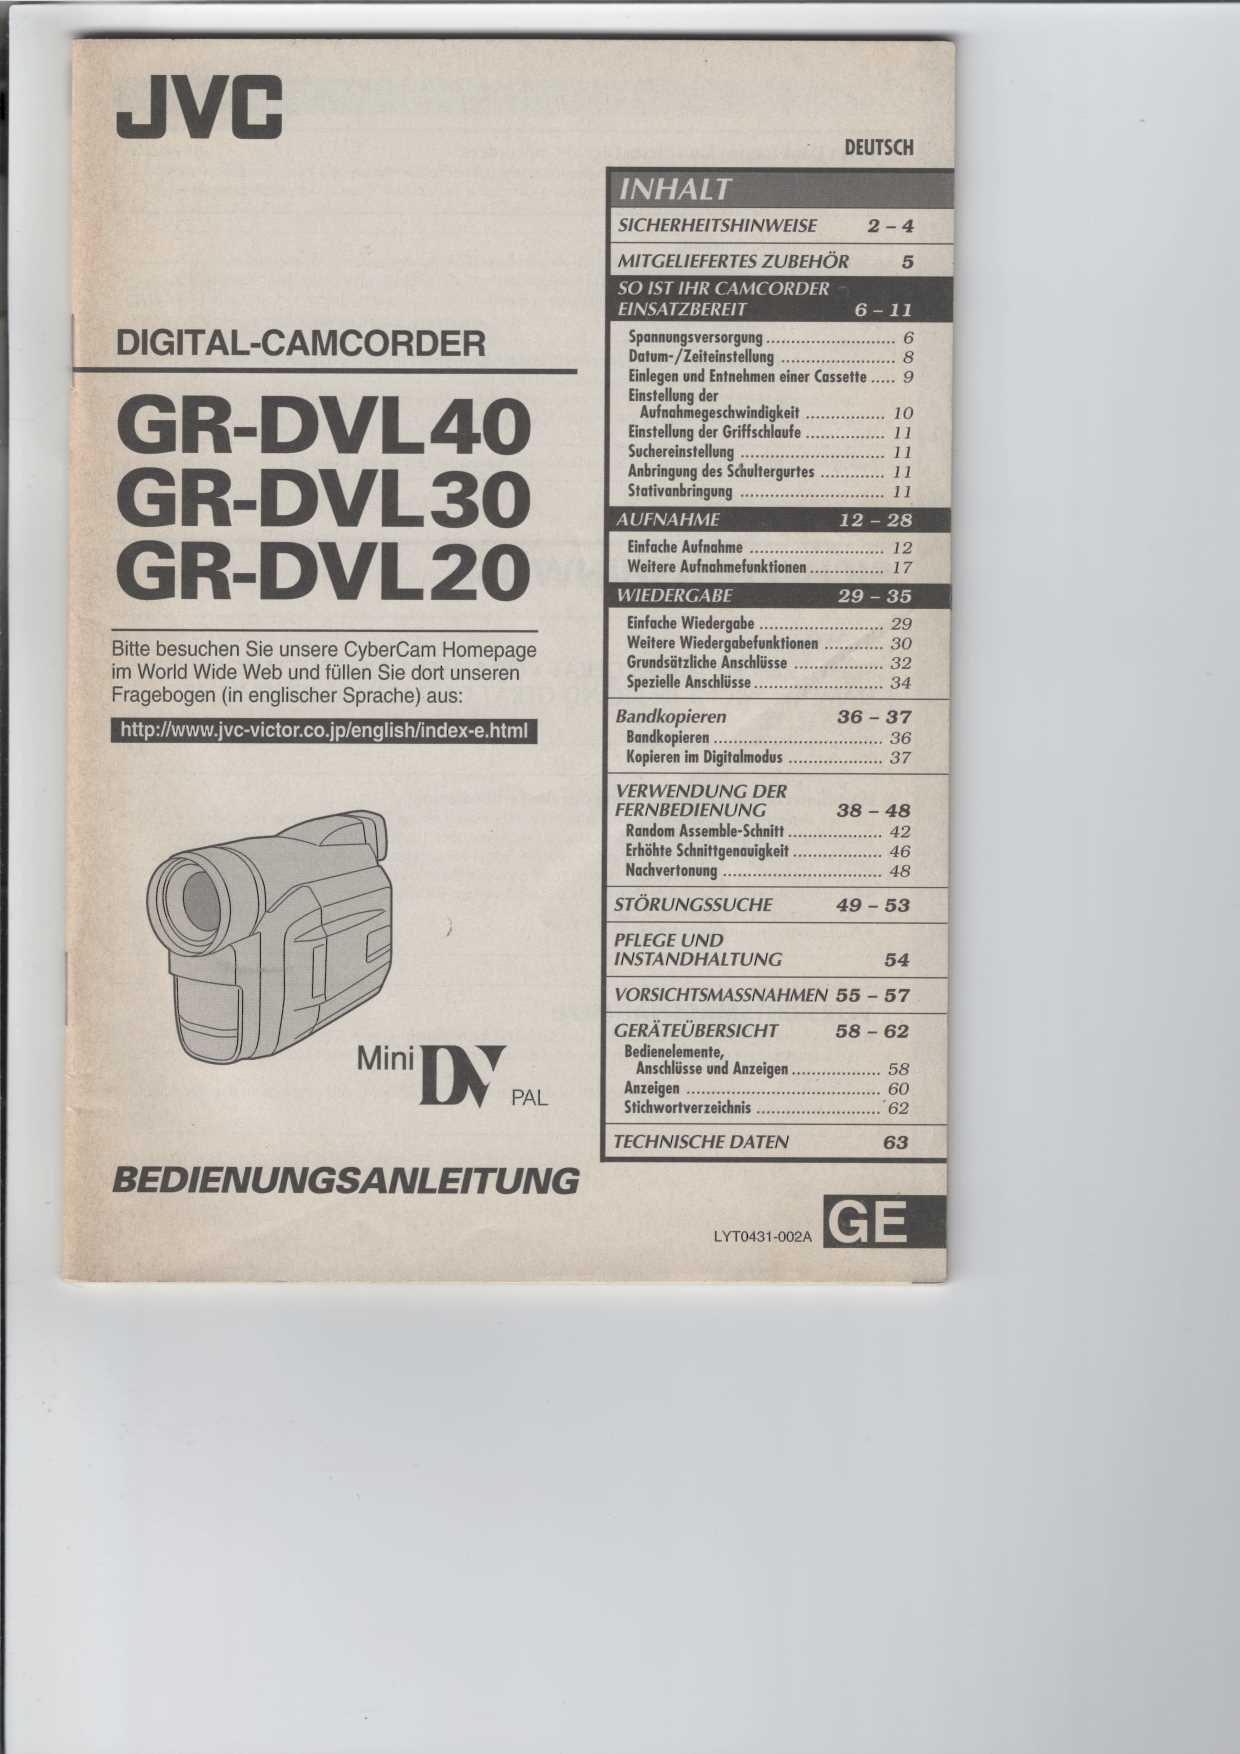   Bedienungsanleitung Digital-Camcorder GR-DVL 30 JVC 